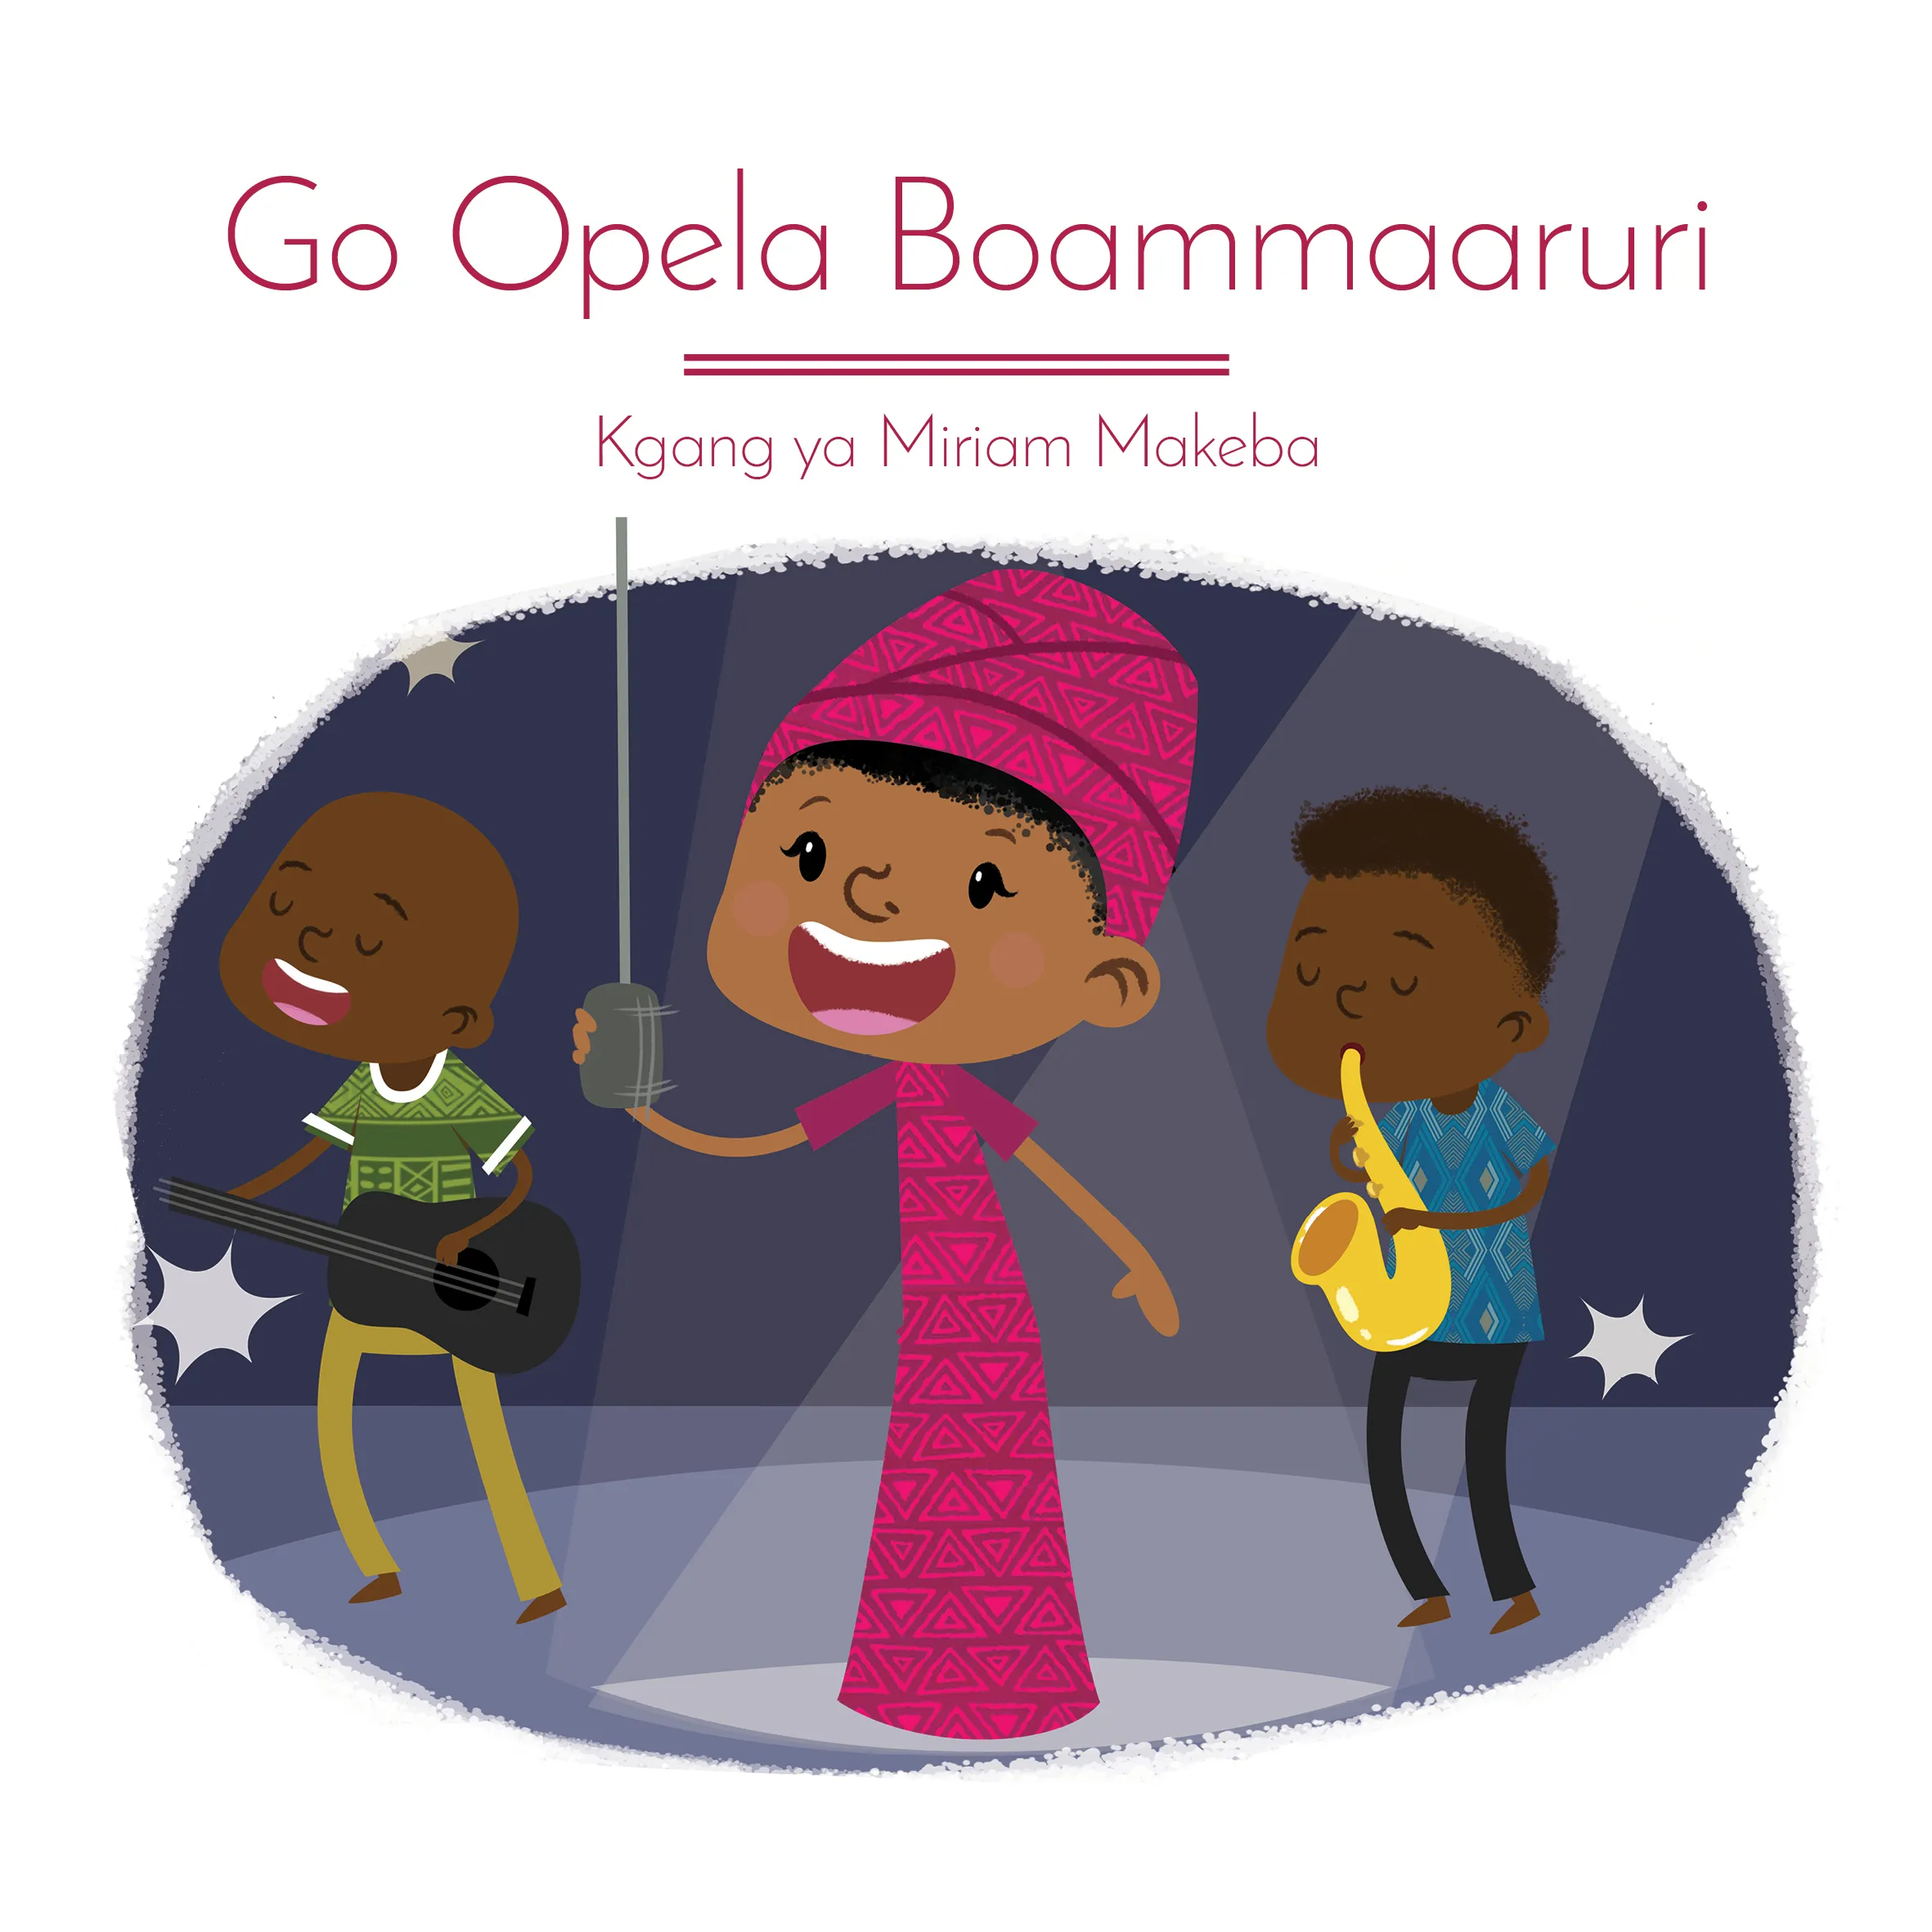 Go Opela Boammaaruri: Kgang ya Miriam Makeba